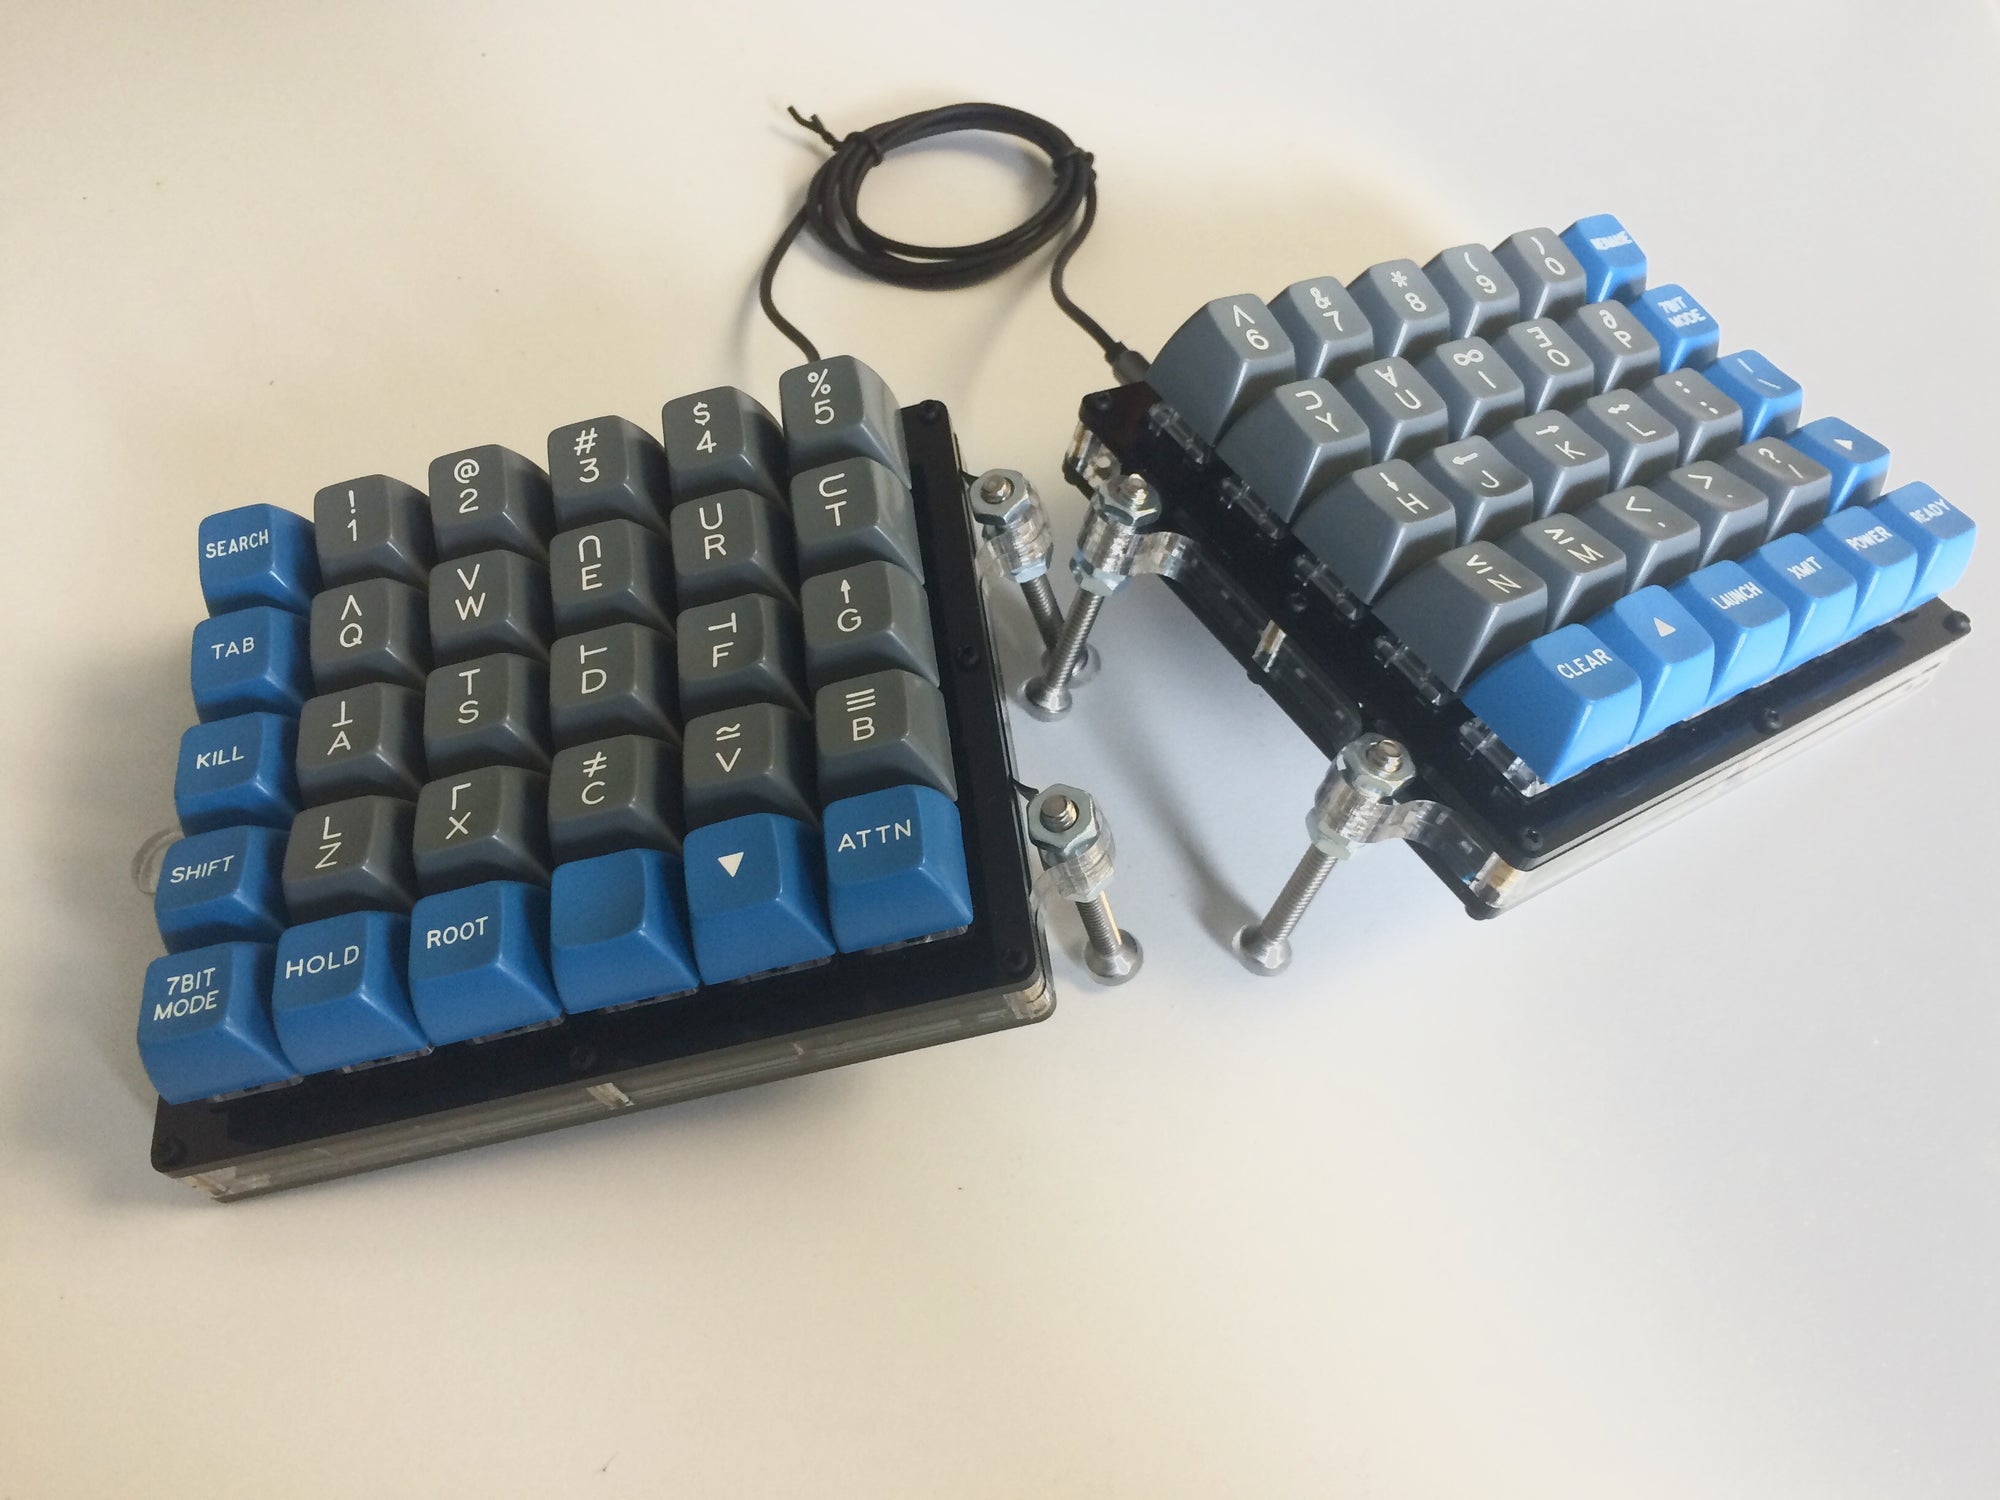 Split Keyboard Parts